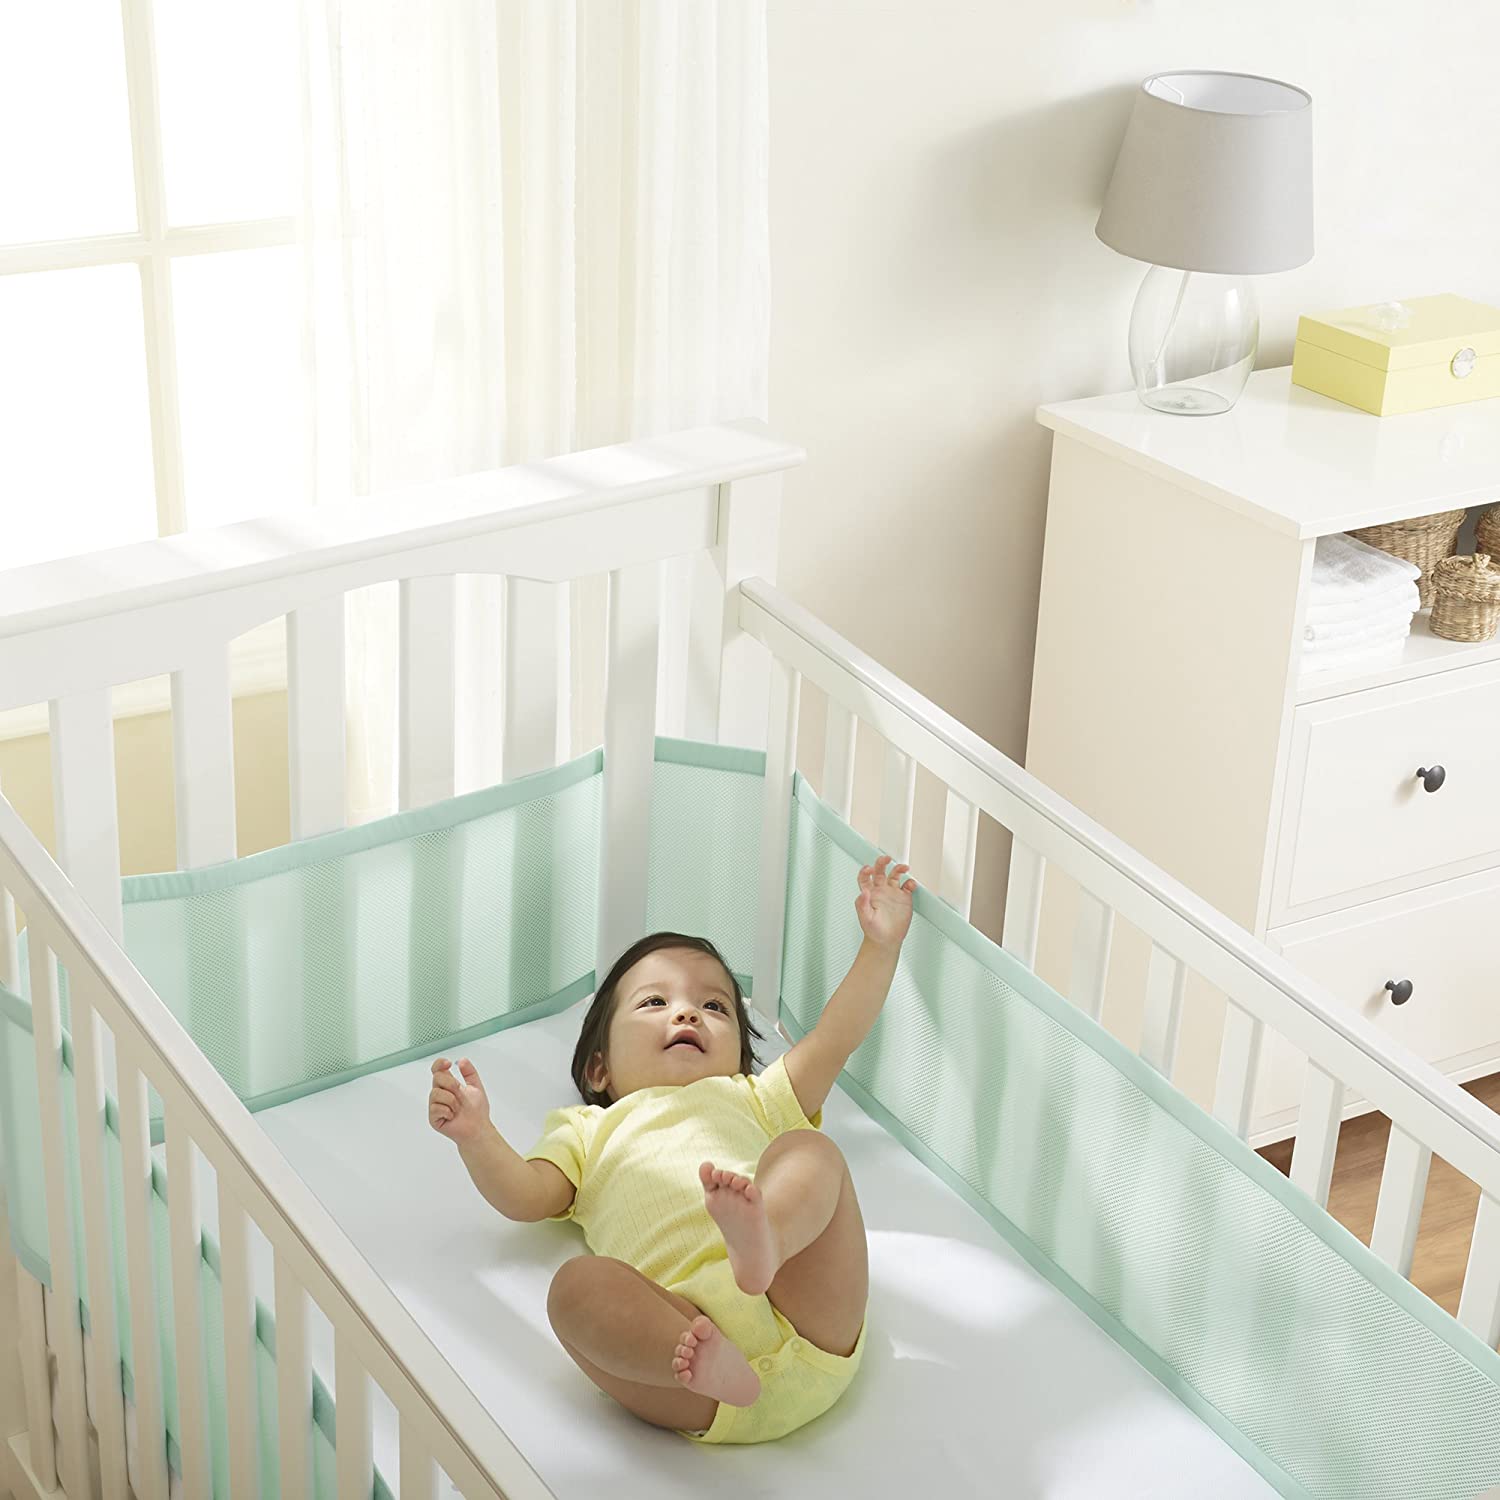 2x Tour de lit bébé respirant protection de barreaux 160x30cm 340x30cm